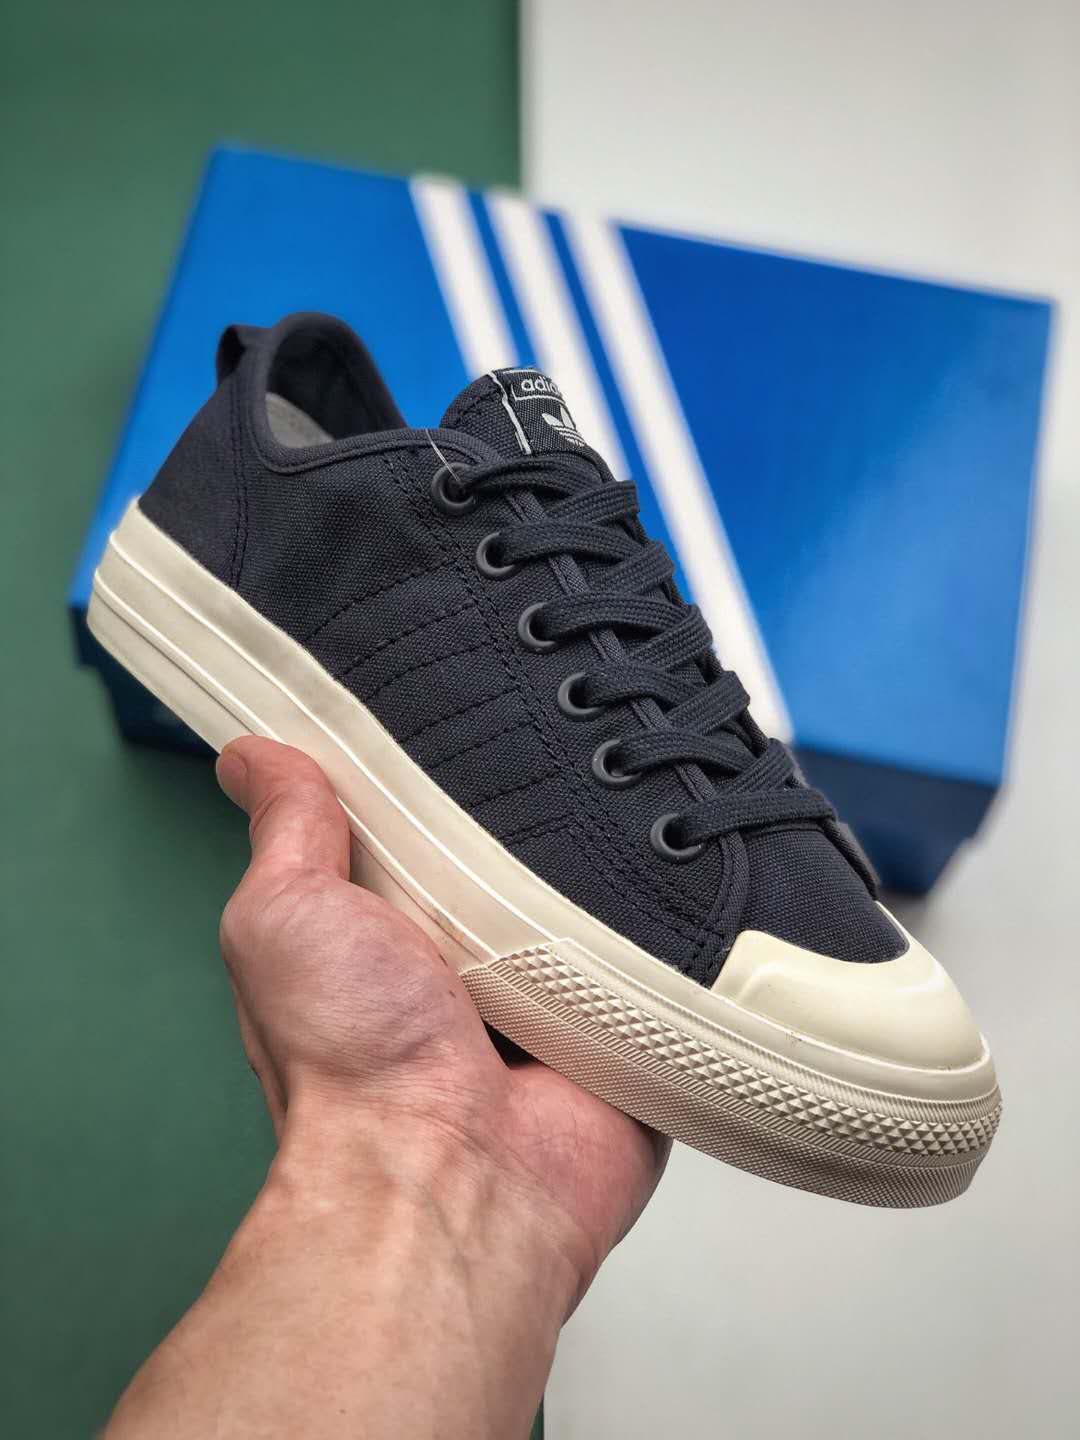 Adidas Nizza RF 74 Black GX8485 - Stylish and Classic Footwear